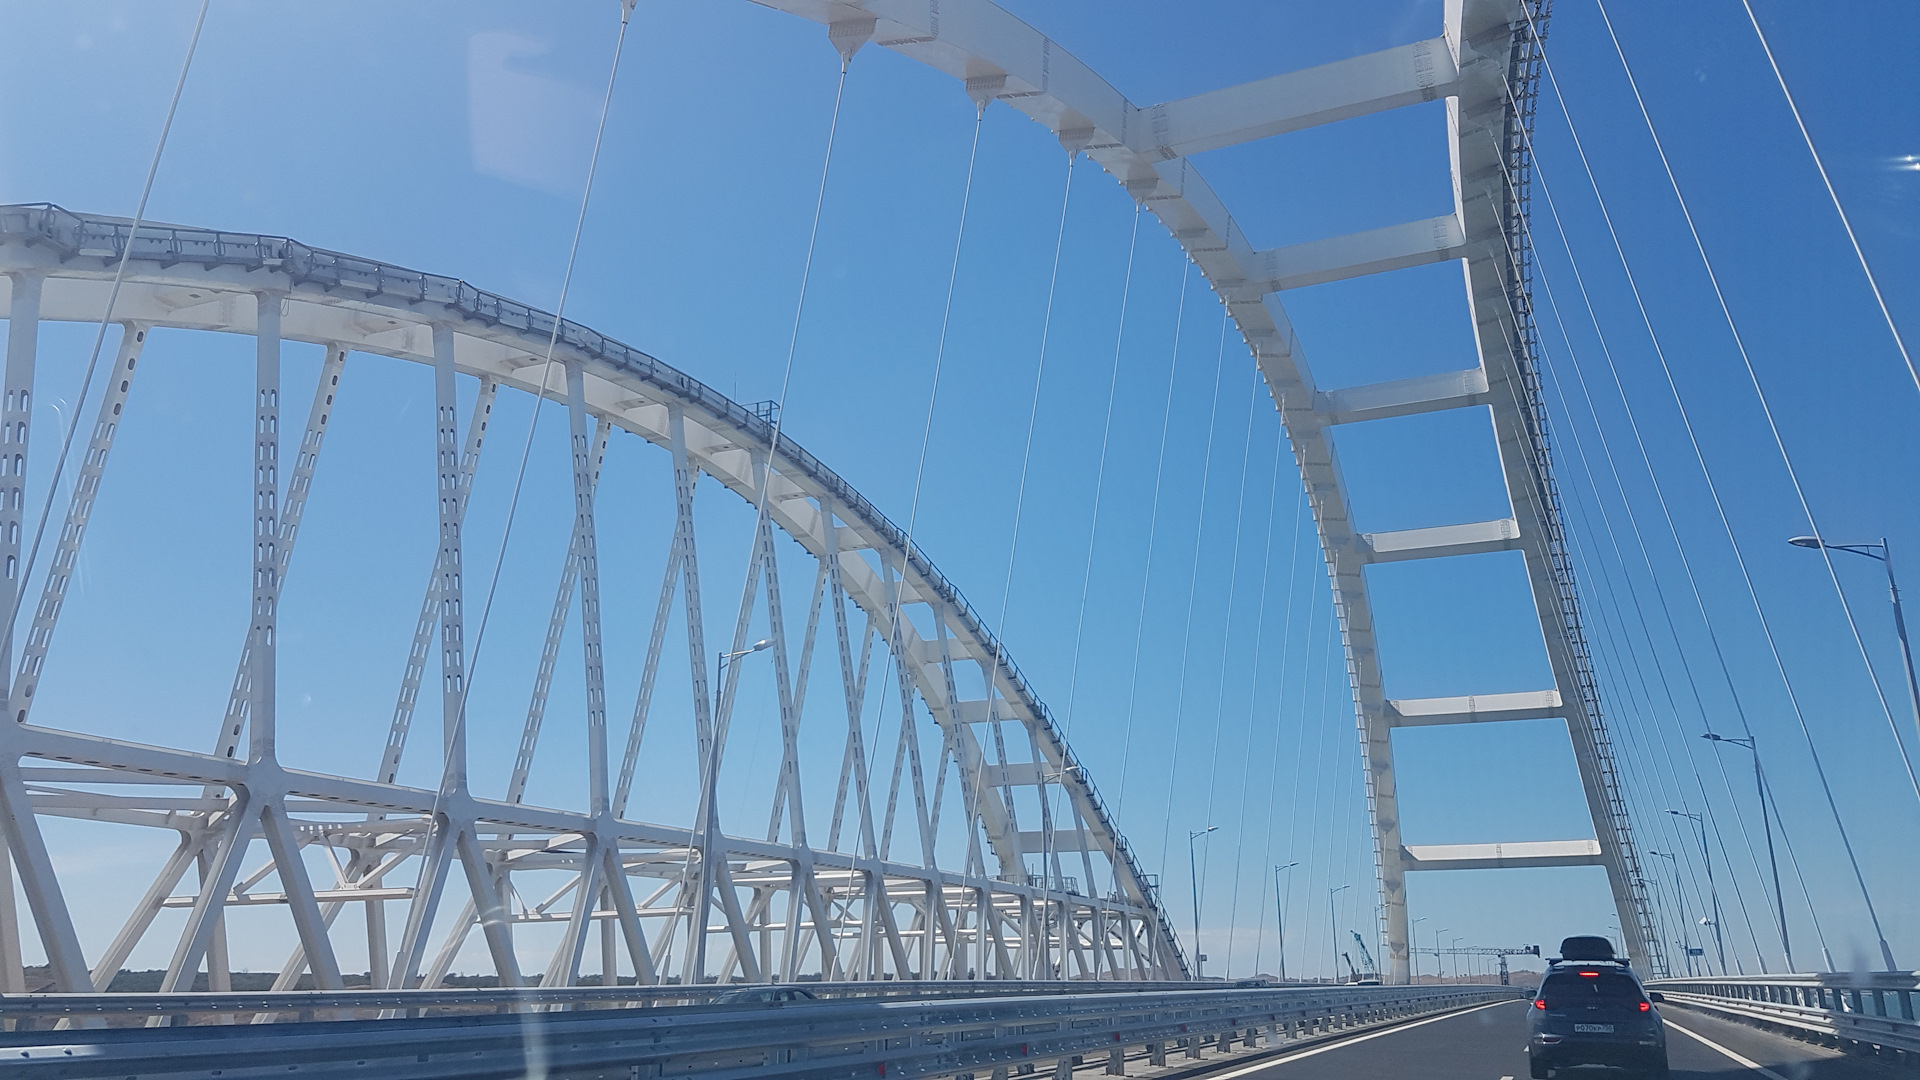 МСК Крым. Крымский мост фото красивое большое. Цена проезда по Крымскому мосту.